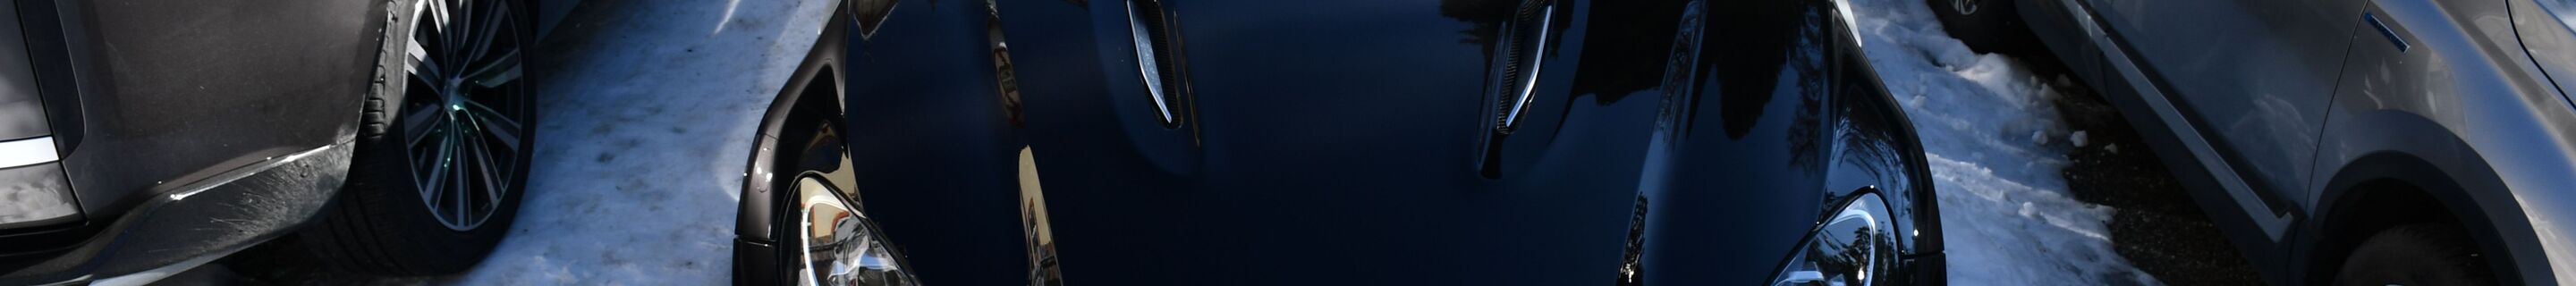 Aston Martin DBX